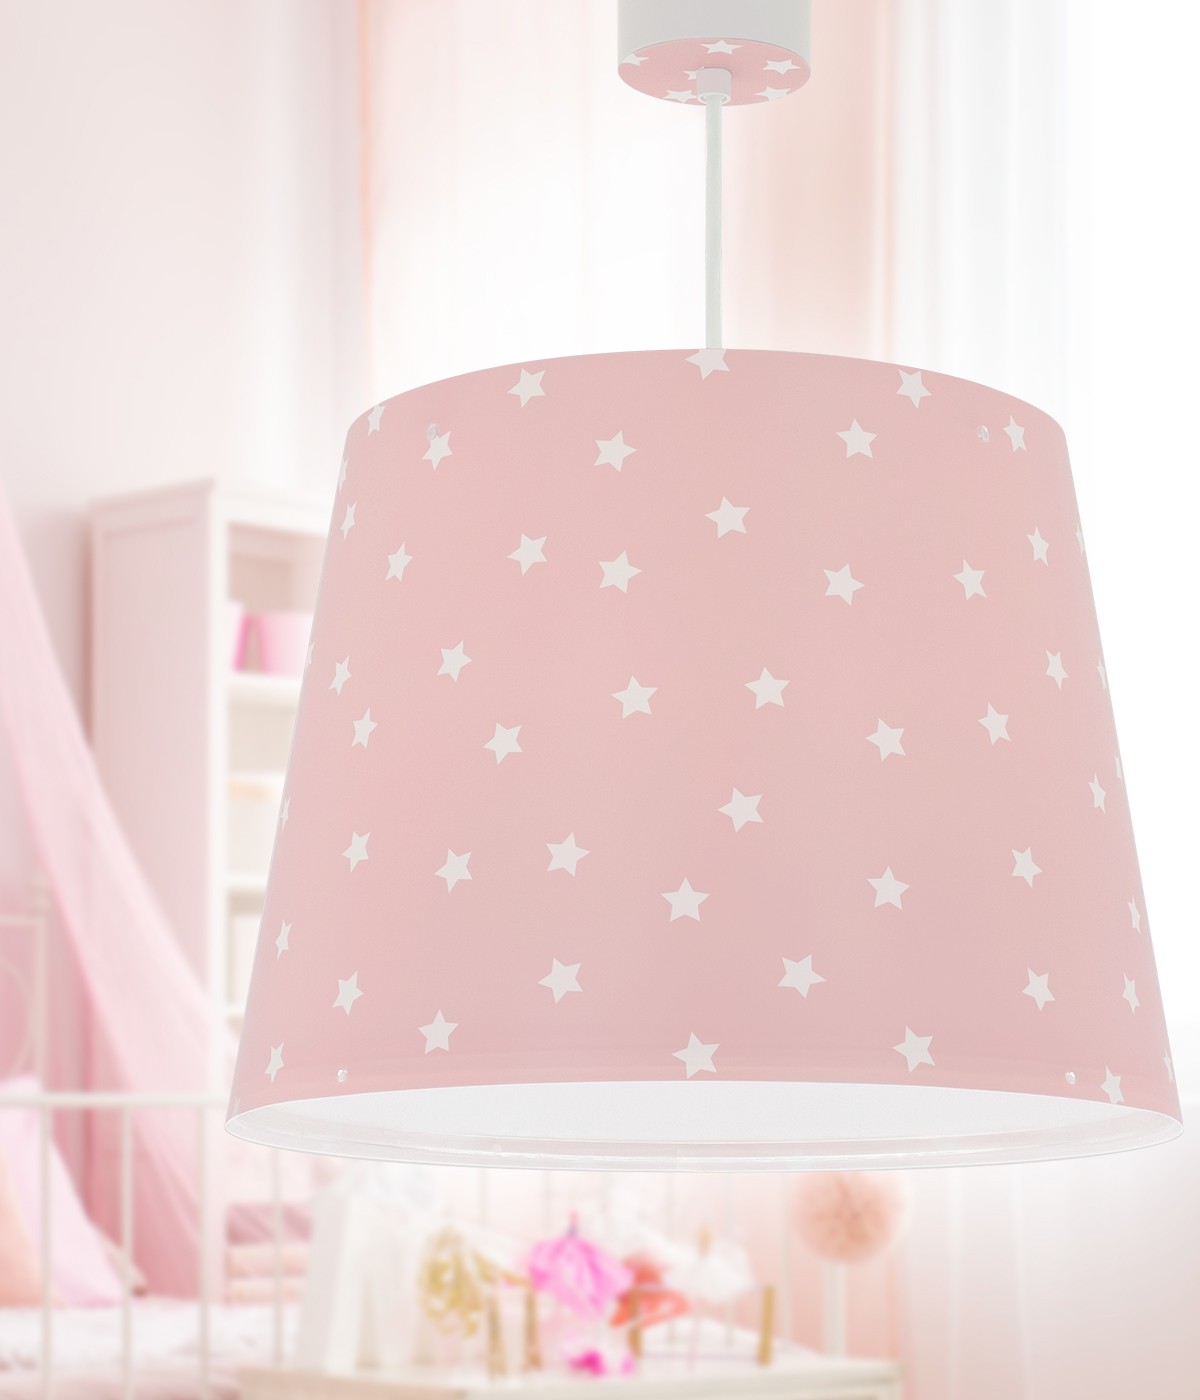 Hanging lamp Star Light pink